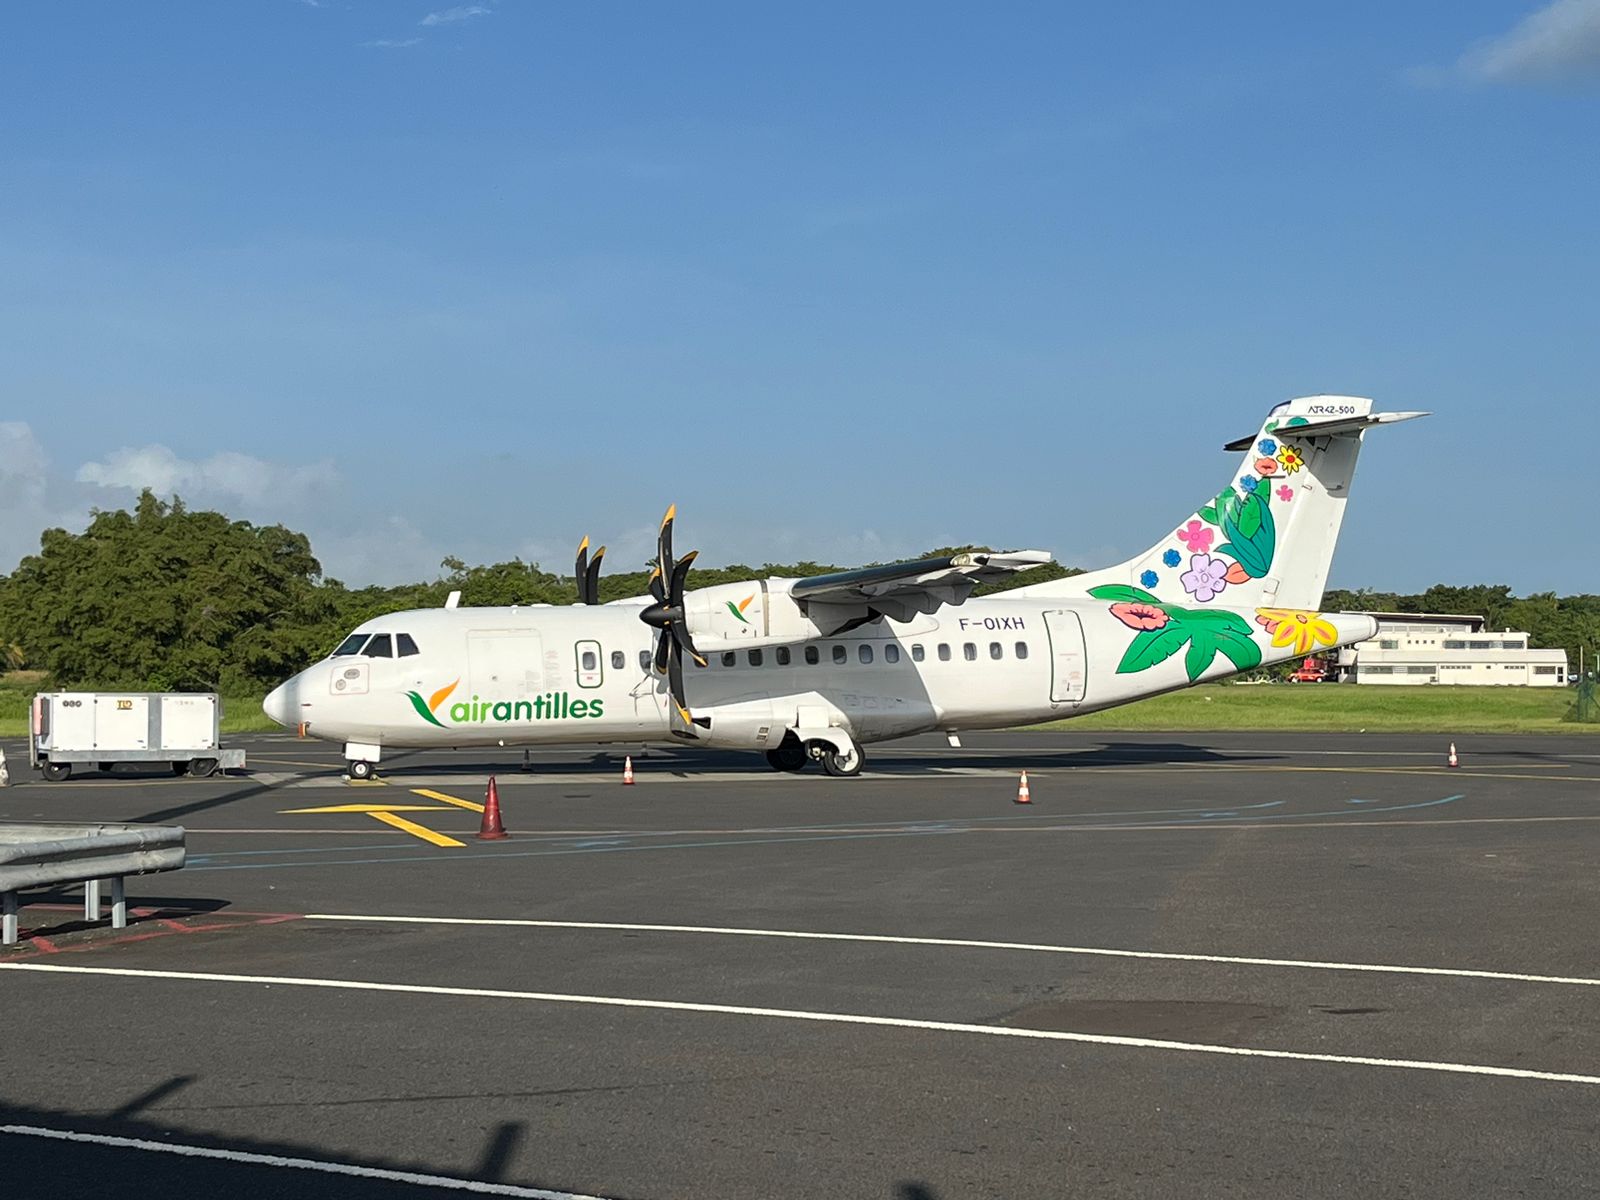     La reprise des vols d’Air Antilles risque d’être reportée encore

